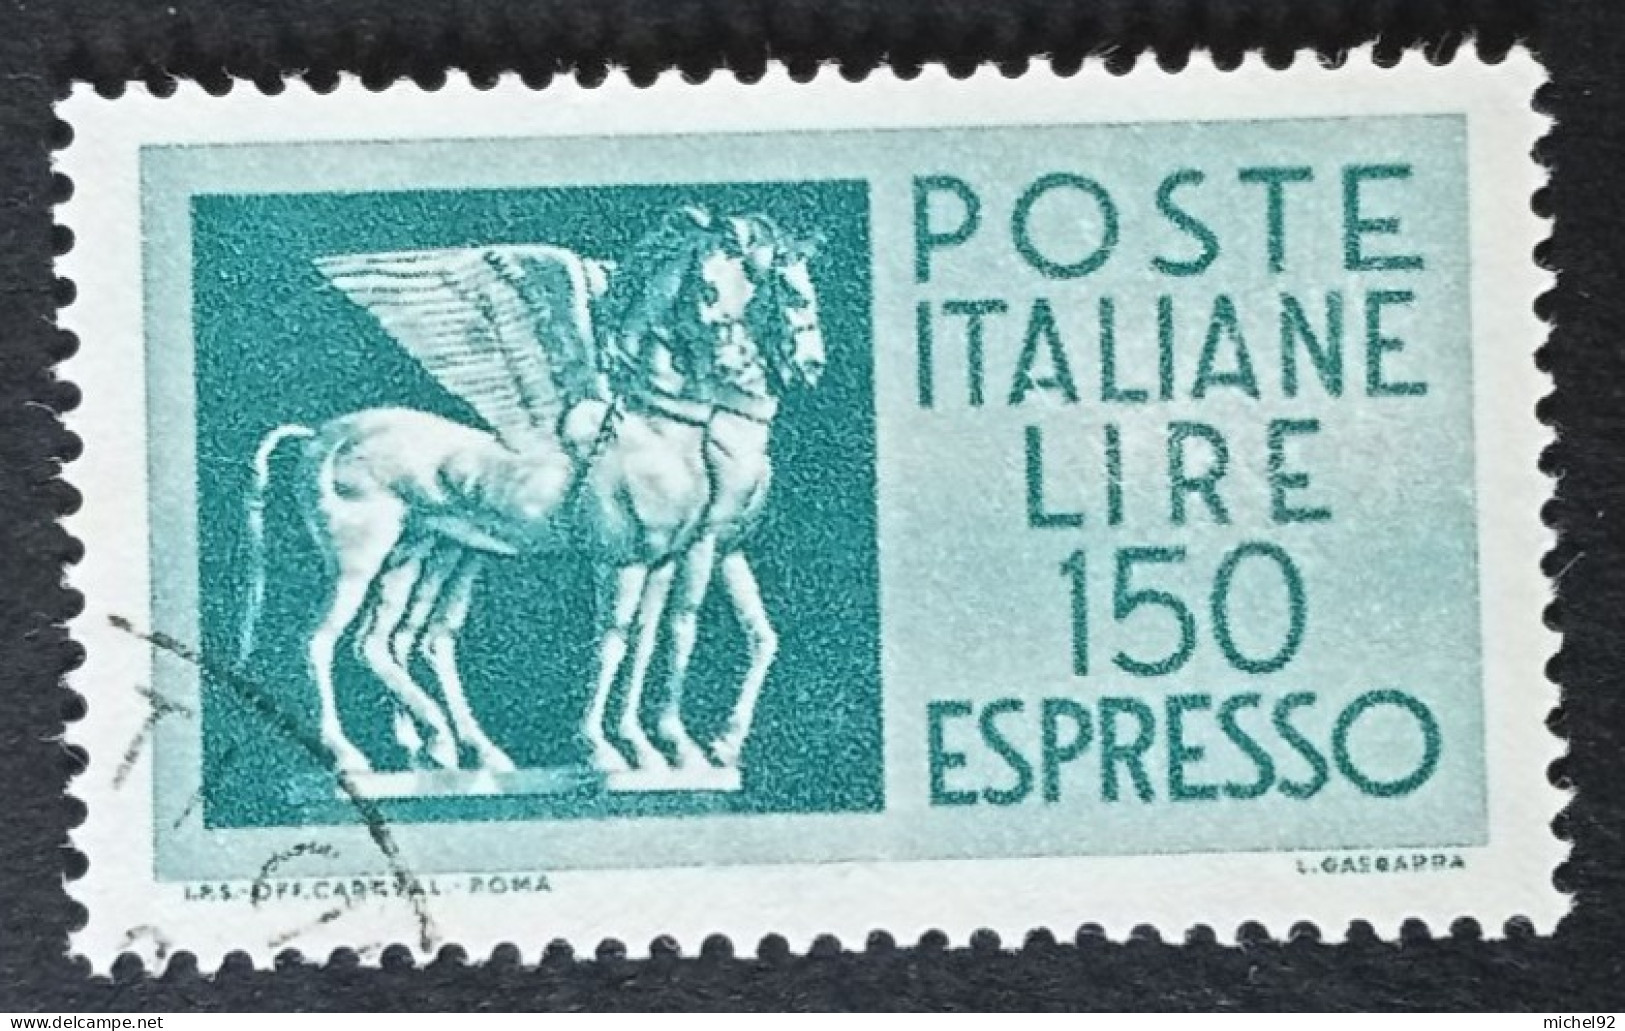 Italie - Express - 1968-76 - YT N°45 - Oblitéré - Poste Exprèsse/pneumatique